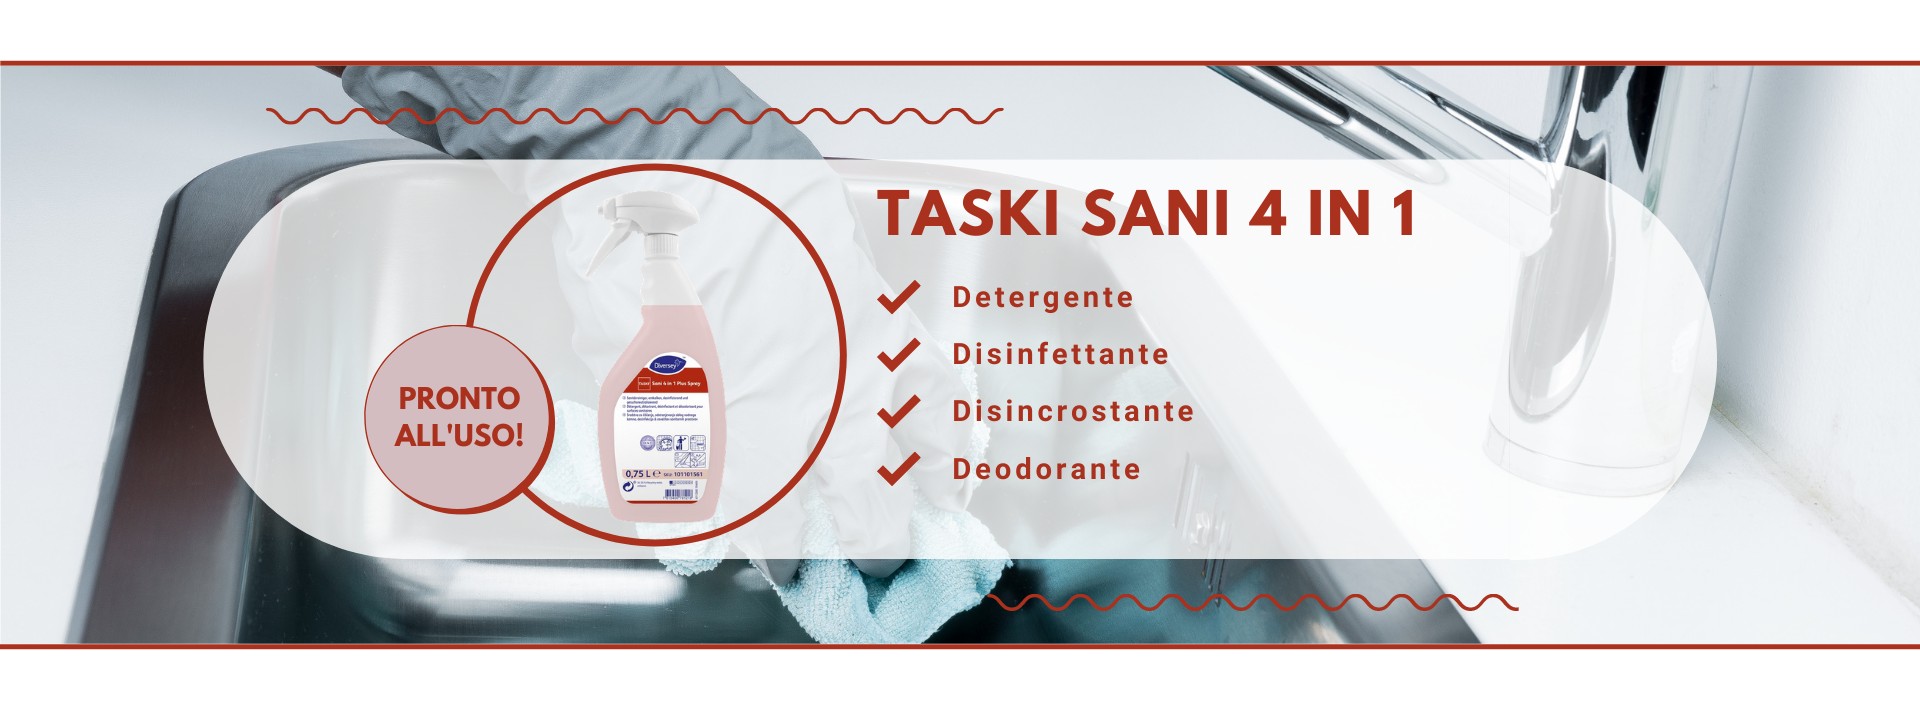 Taski Sani 4 in 1 detergente disinfettante disincrostante deodorante pronto all uso 750ml